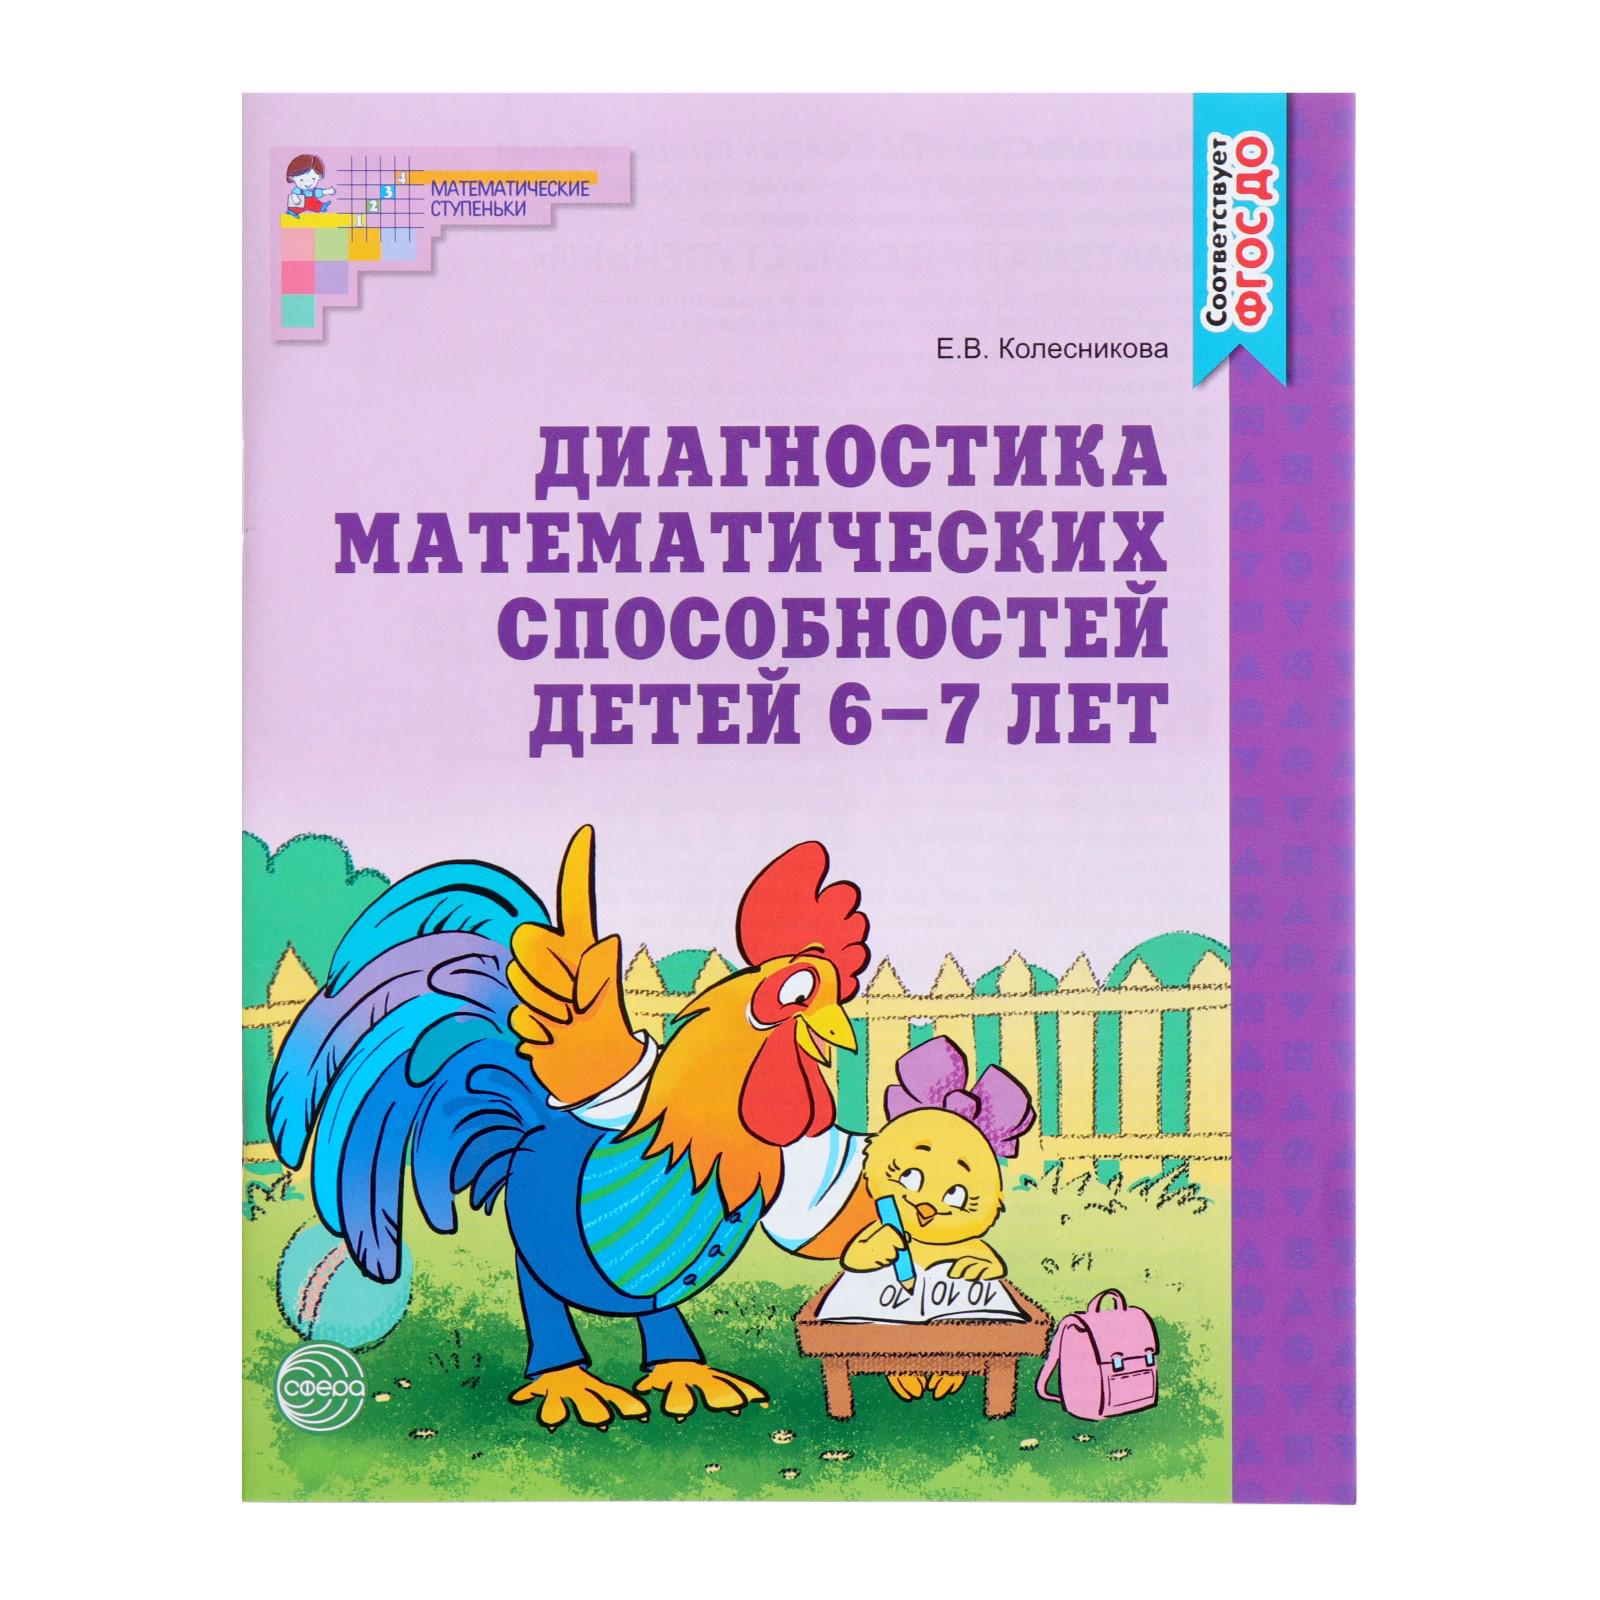 Рабочая тетрадь Буква-ленд для детей 6-7 лет «Диагностика математических способностей» - фото 8